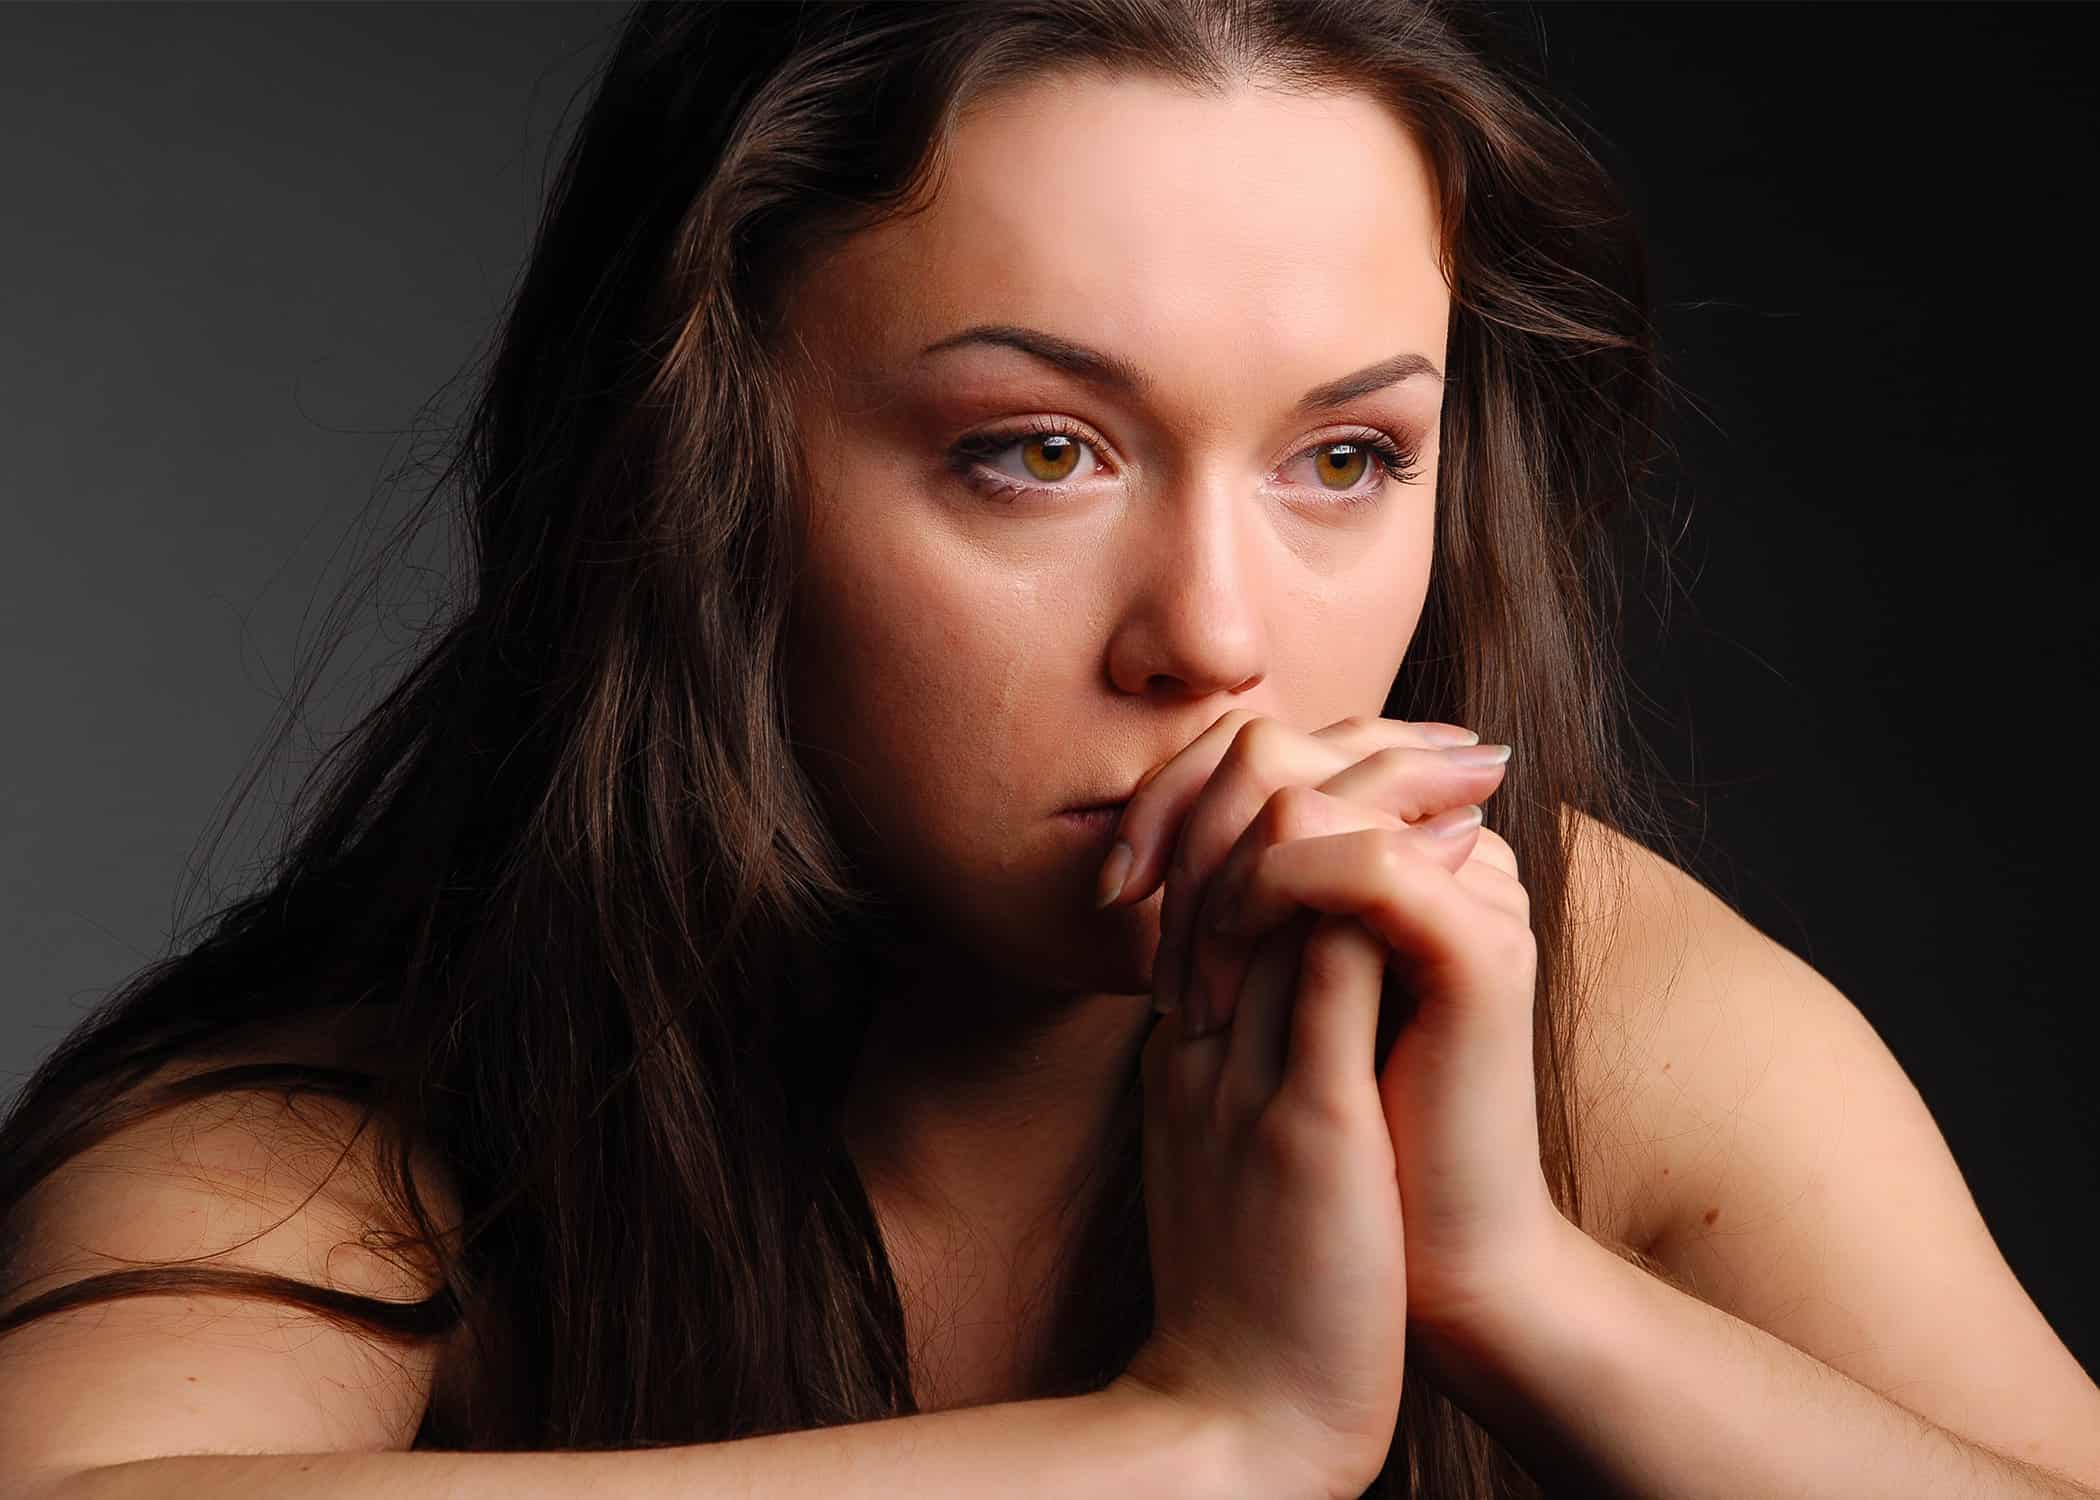 distraught-woman-praying